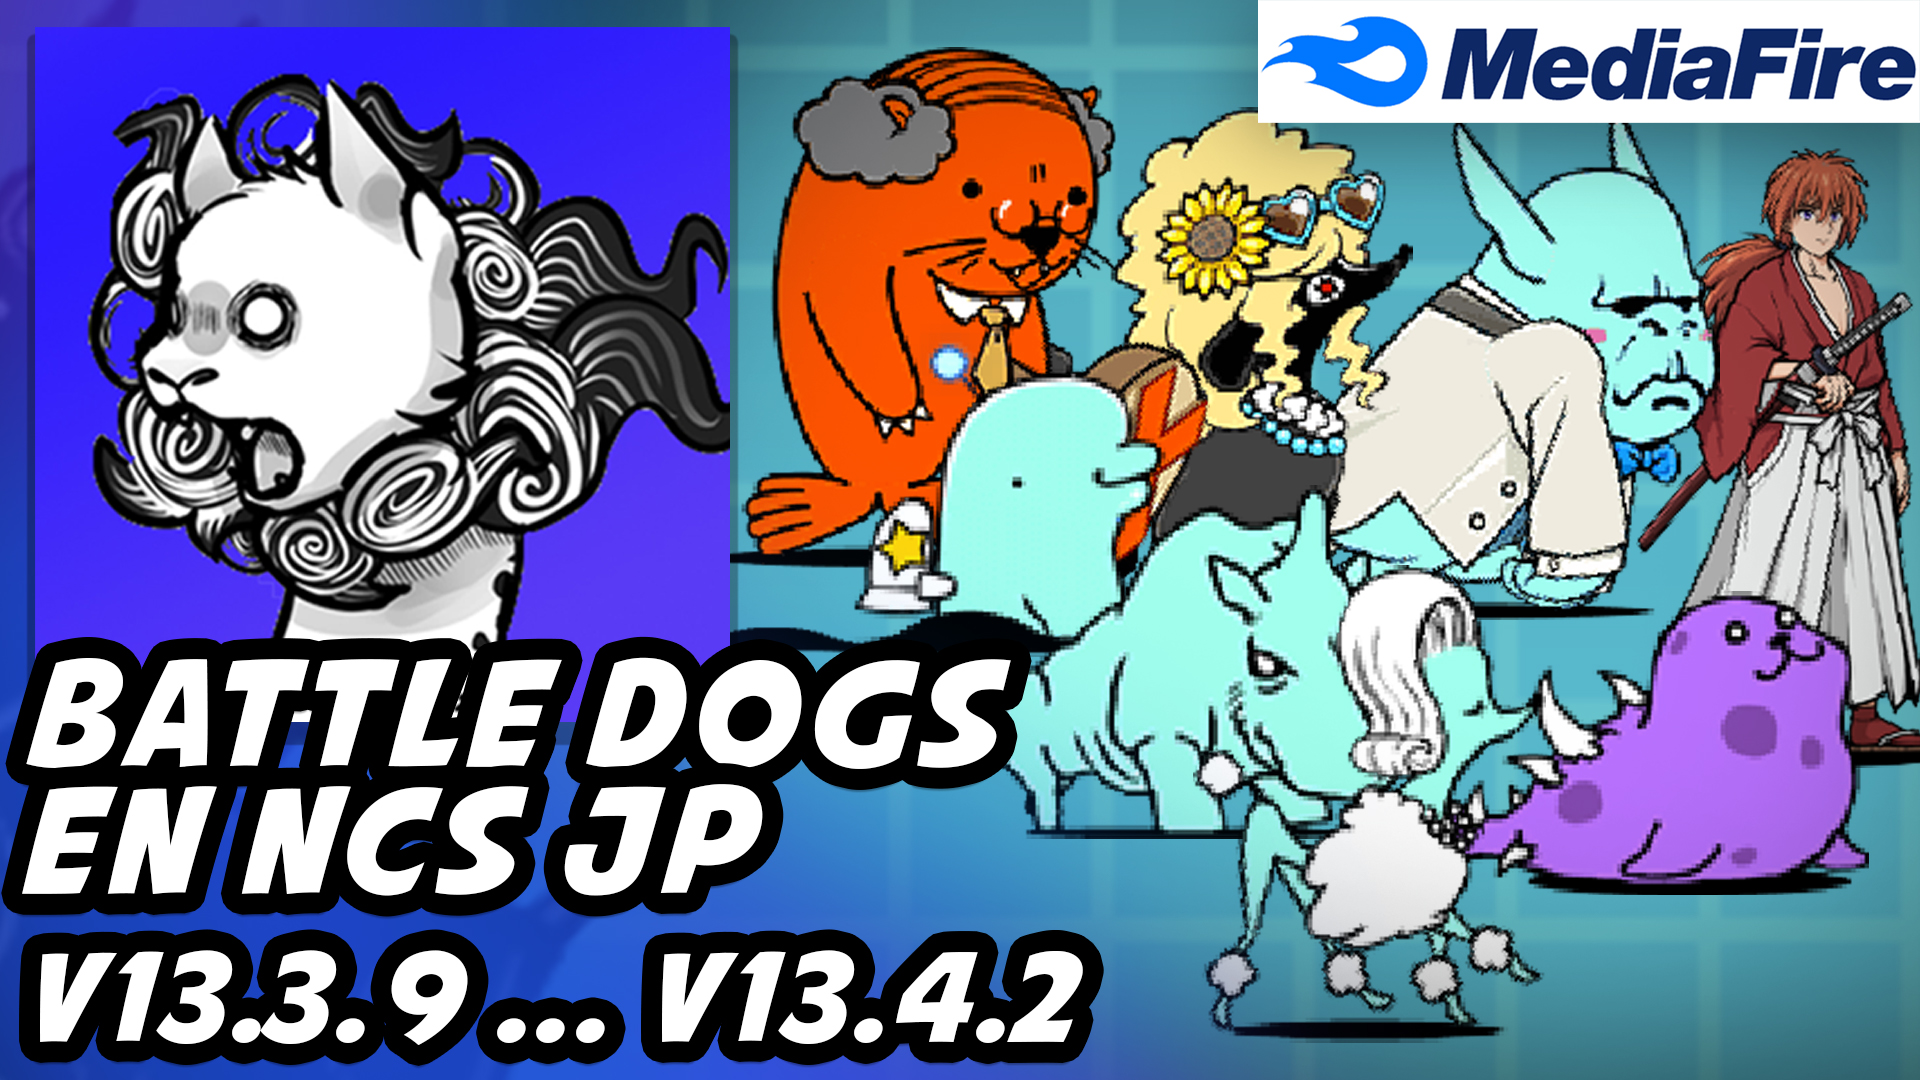 PTC Battle Dogs v13.3.9 / v13.4.2 [EN/NCS/JP] - Mediafire Download ...